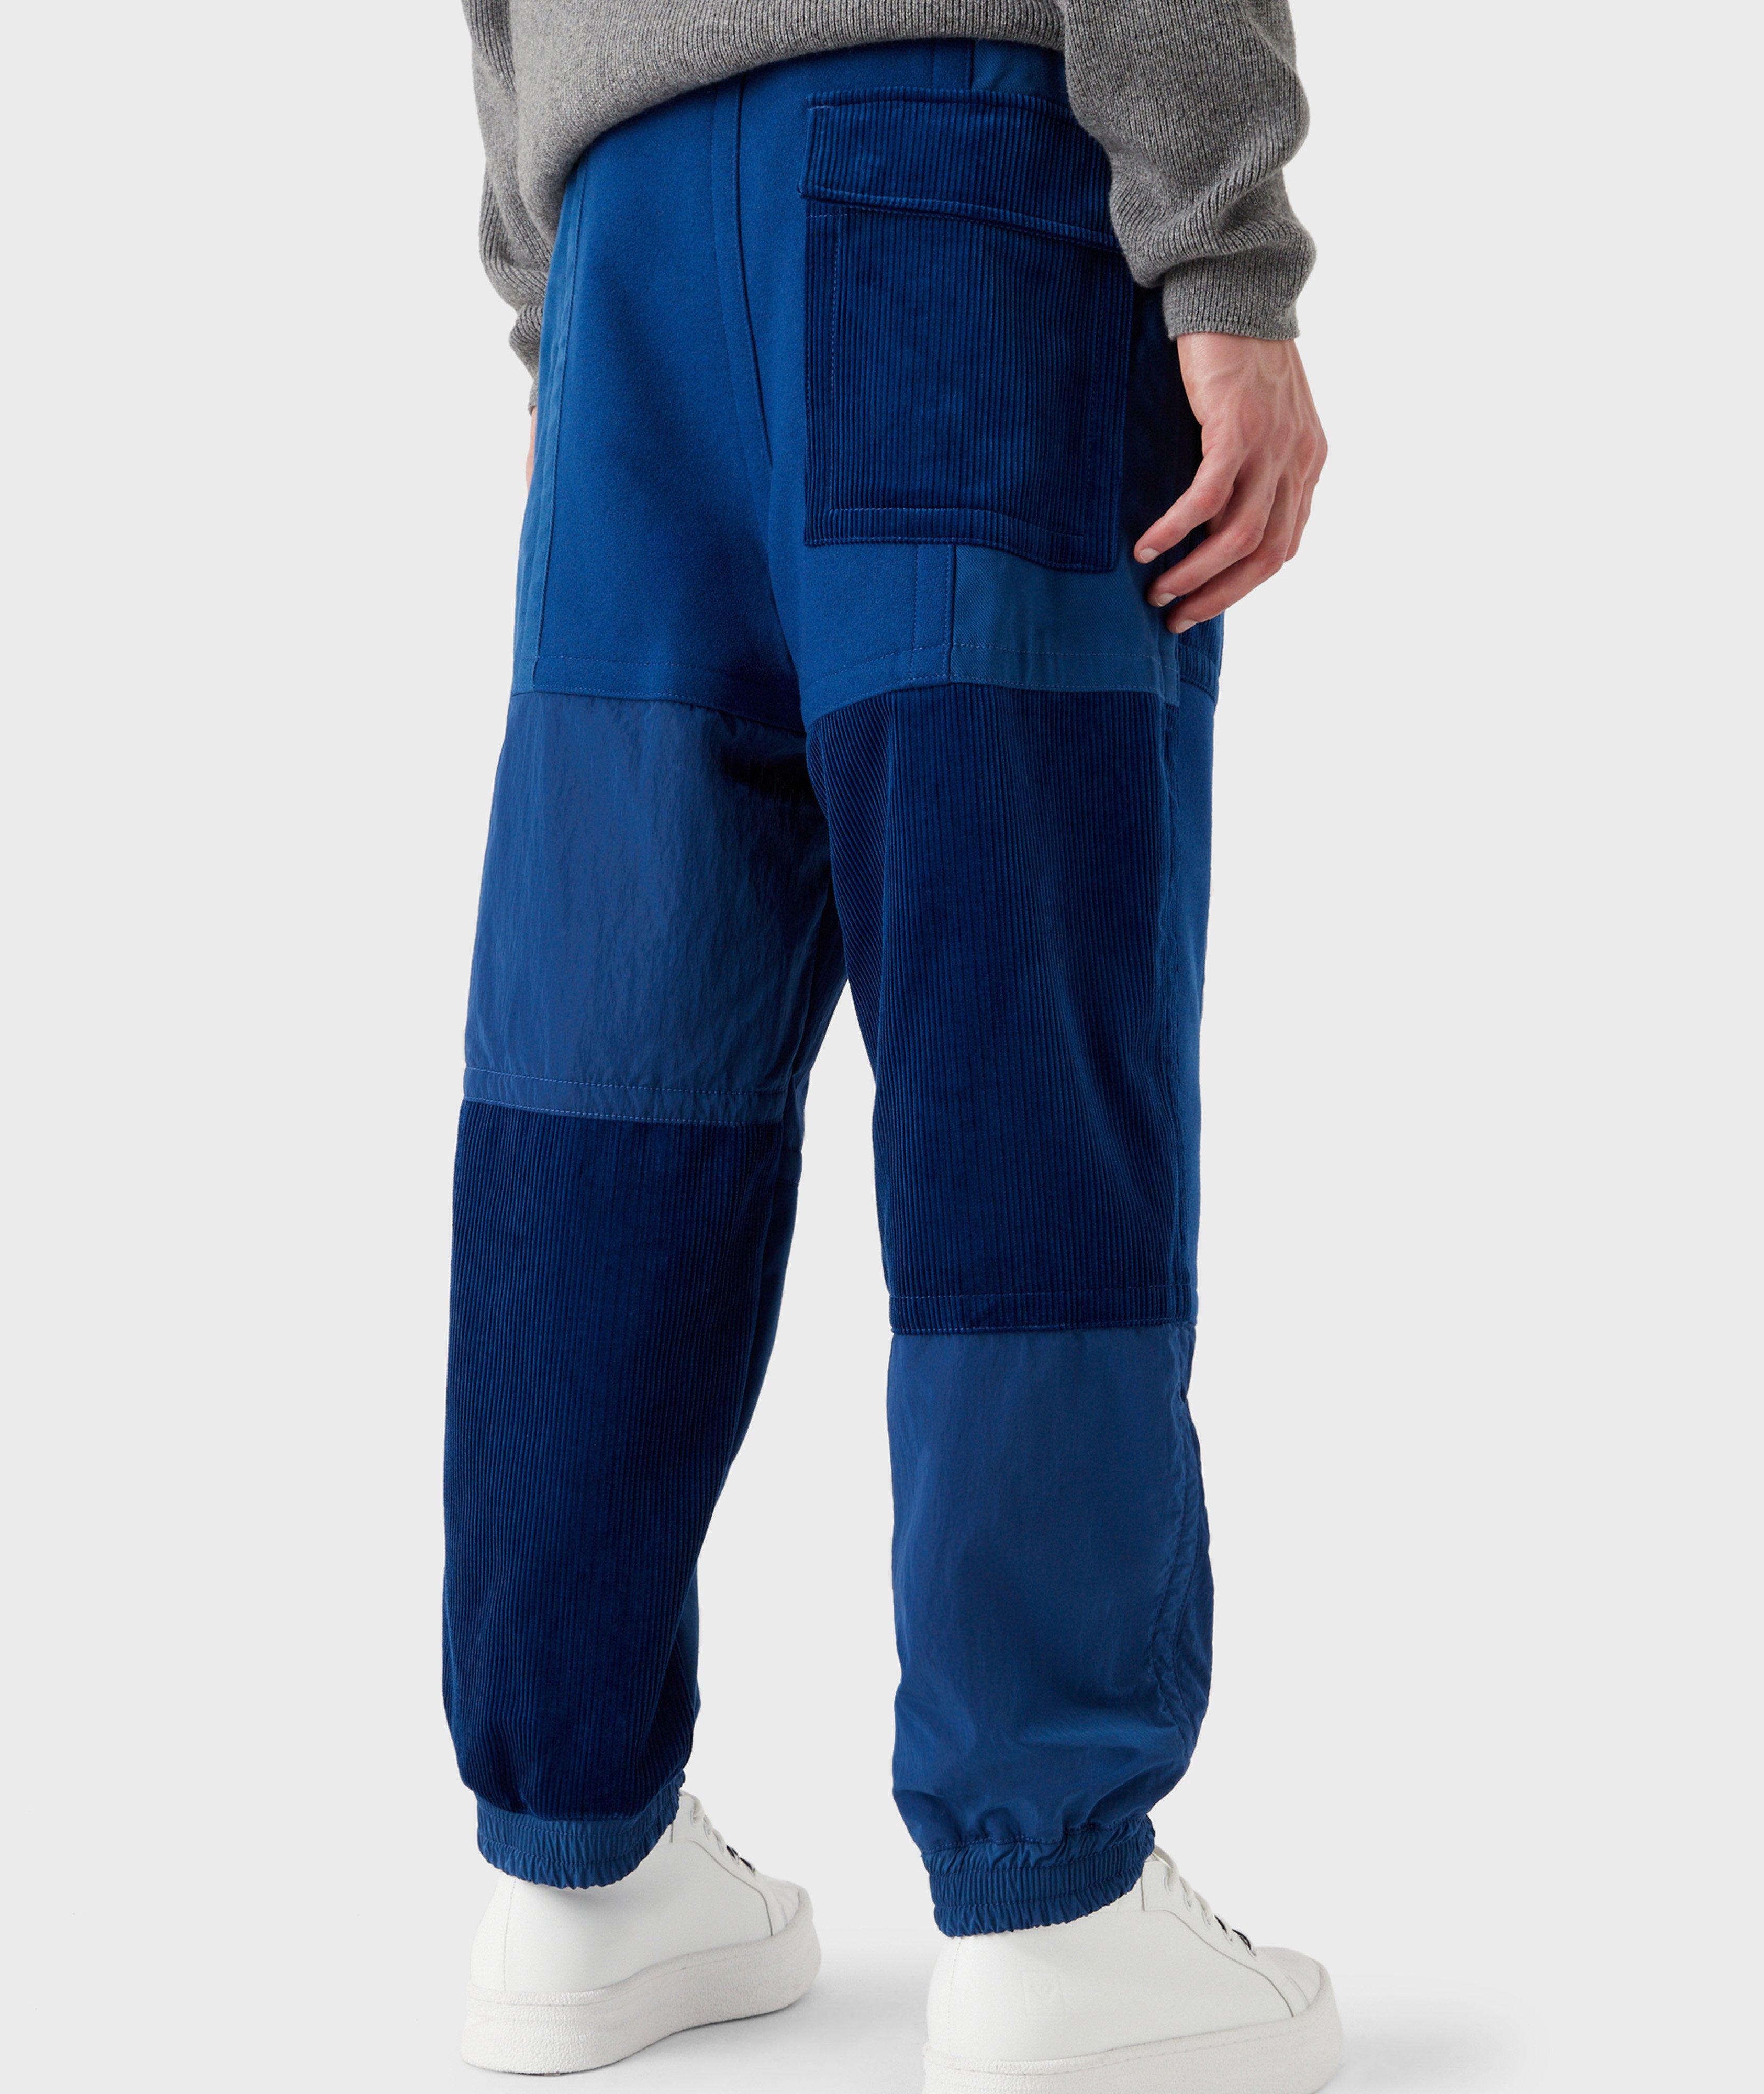 Pantalon sport en coton, collection écoresponsable EArctic image 2